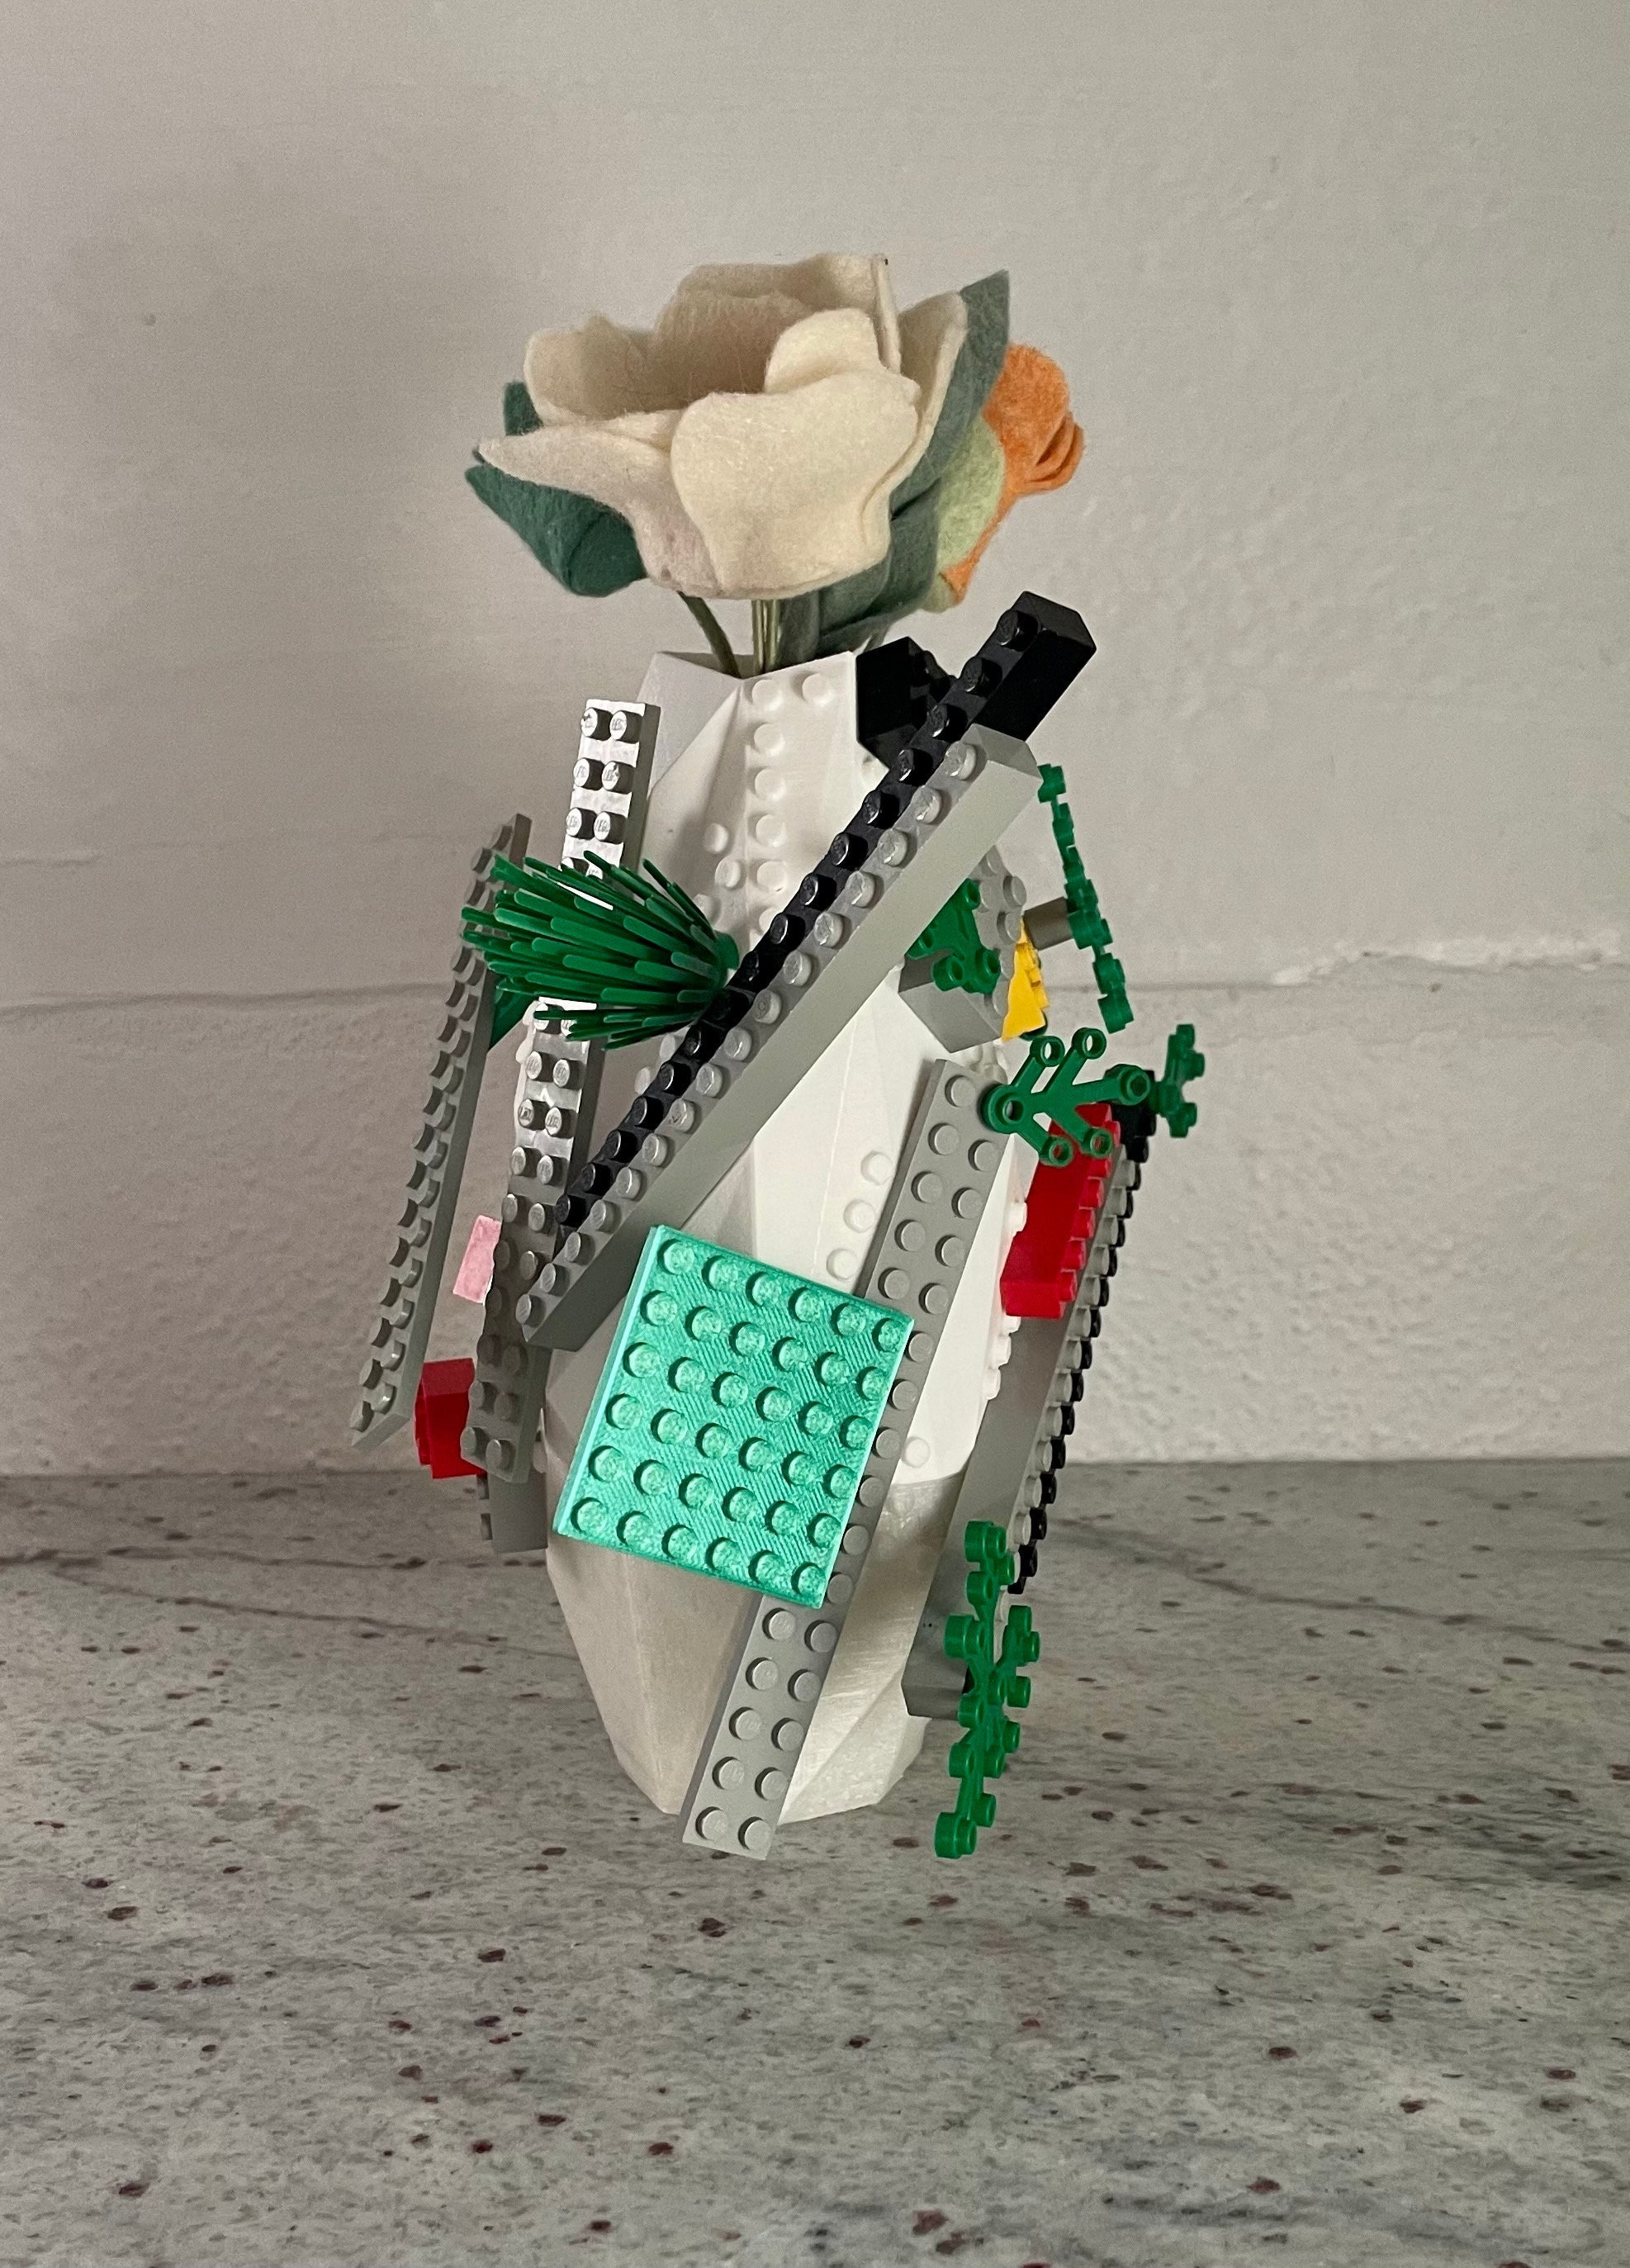 Collector Vase en Lego Le Fleuriste x Monceau Fleurs édition